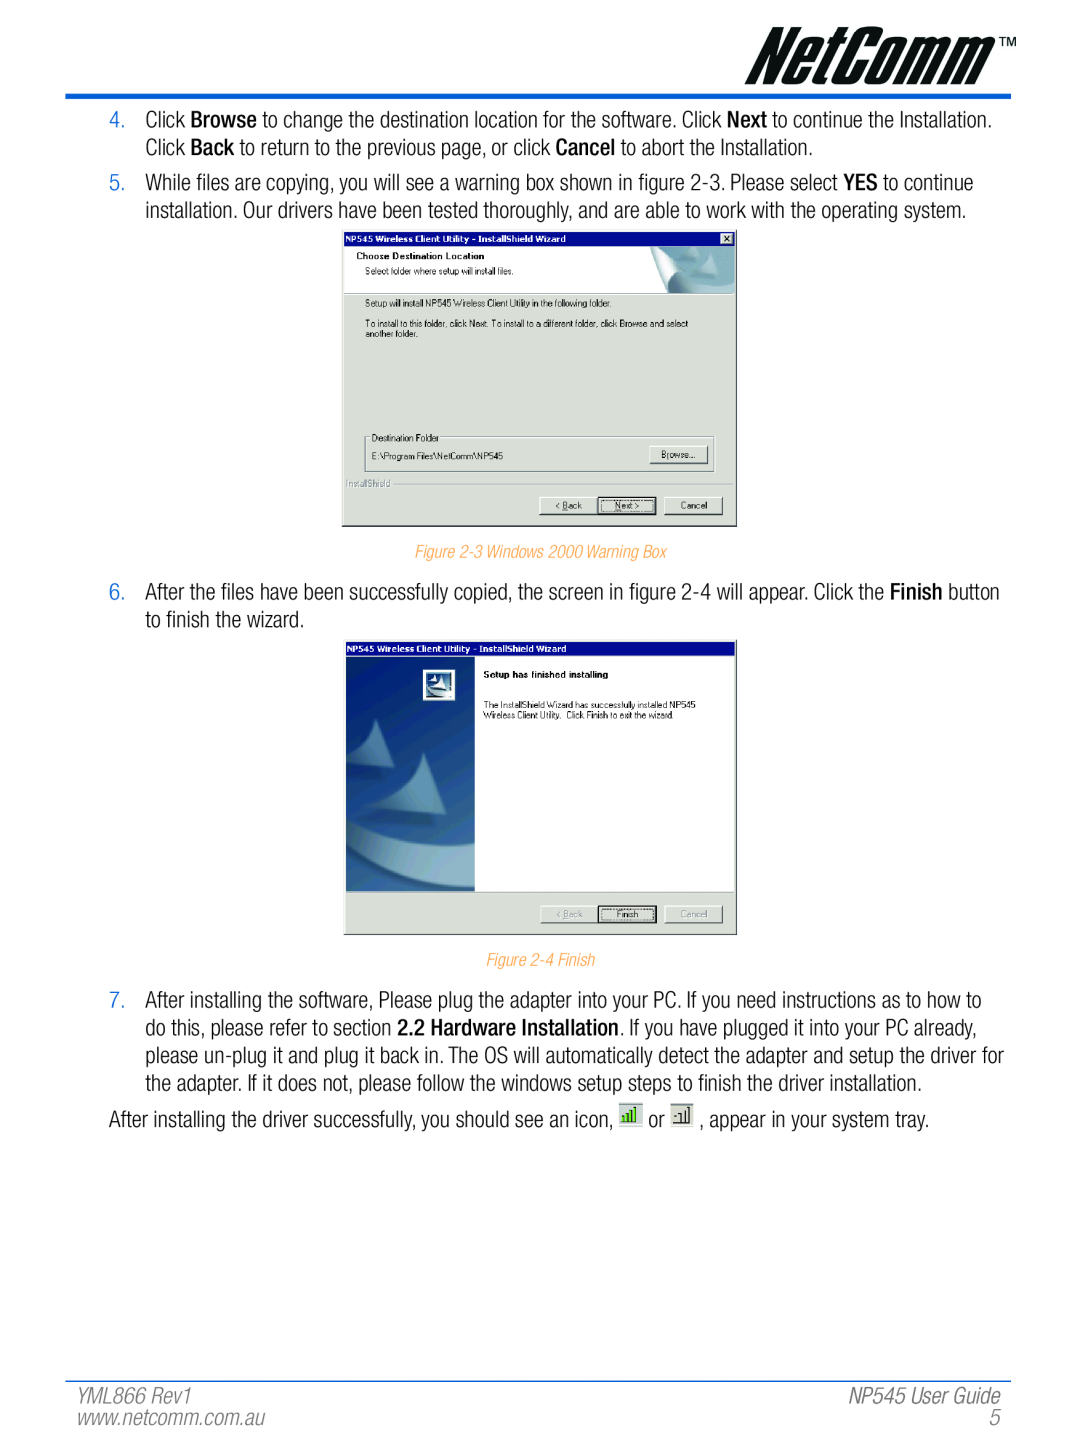 NetComm NP545 manual YML866 Rev1, 3 Windows 2000 Warning Box, 4 Finish 